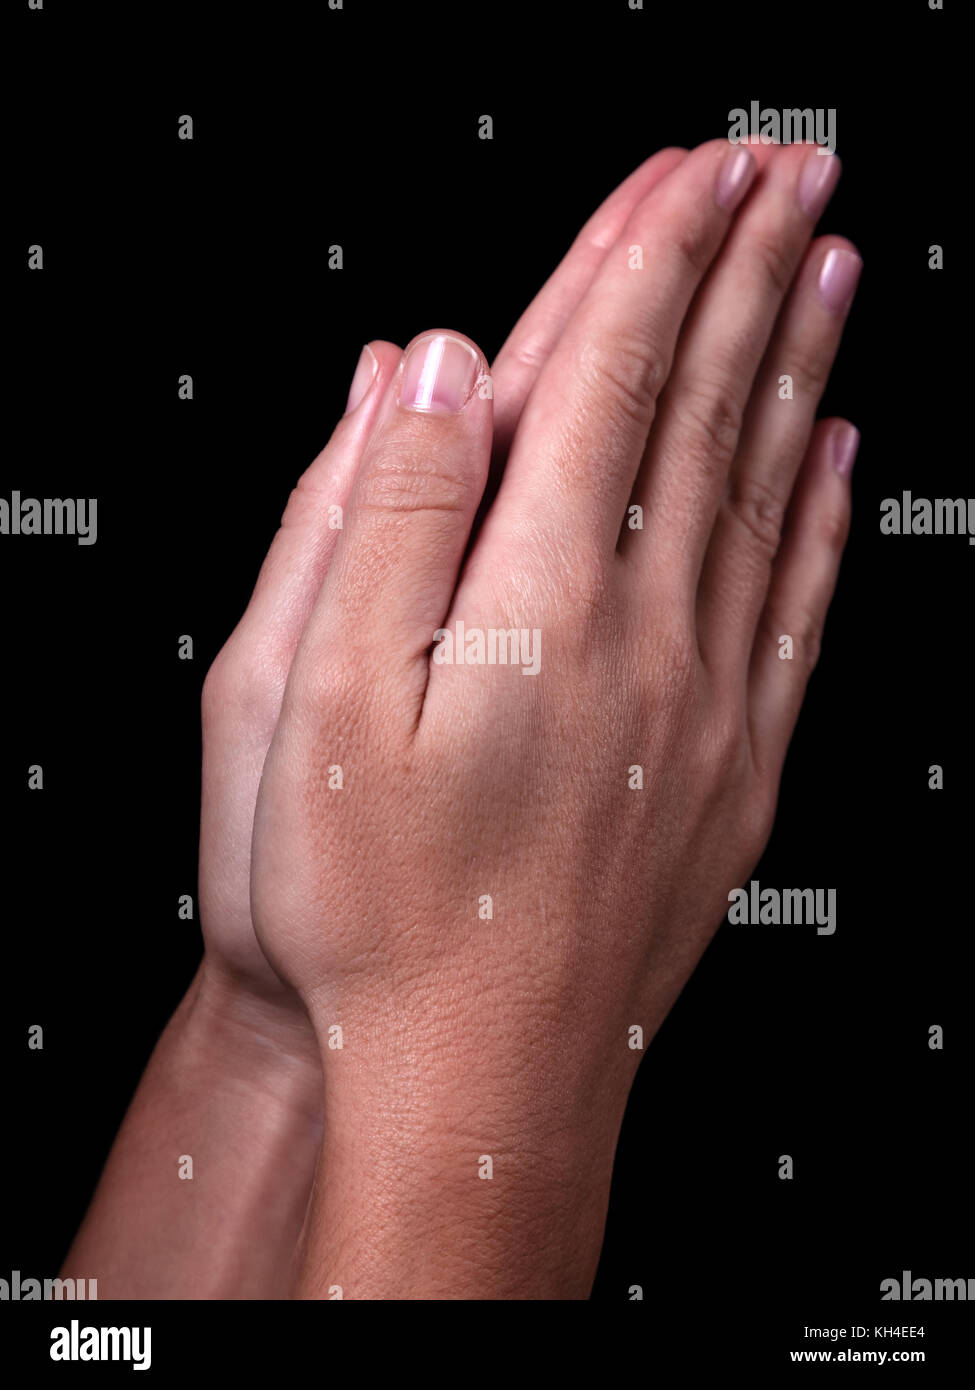 Manos femeninas orando con palmas juntos. fondo negro. Cierre de mujer mano. Concepto de oración, orar, fe, religión, religiosos, de culto Foto de stock